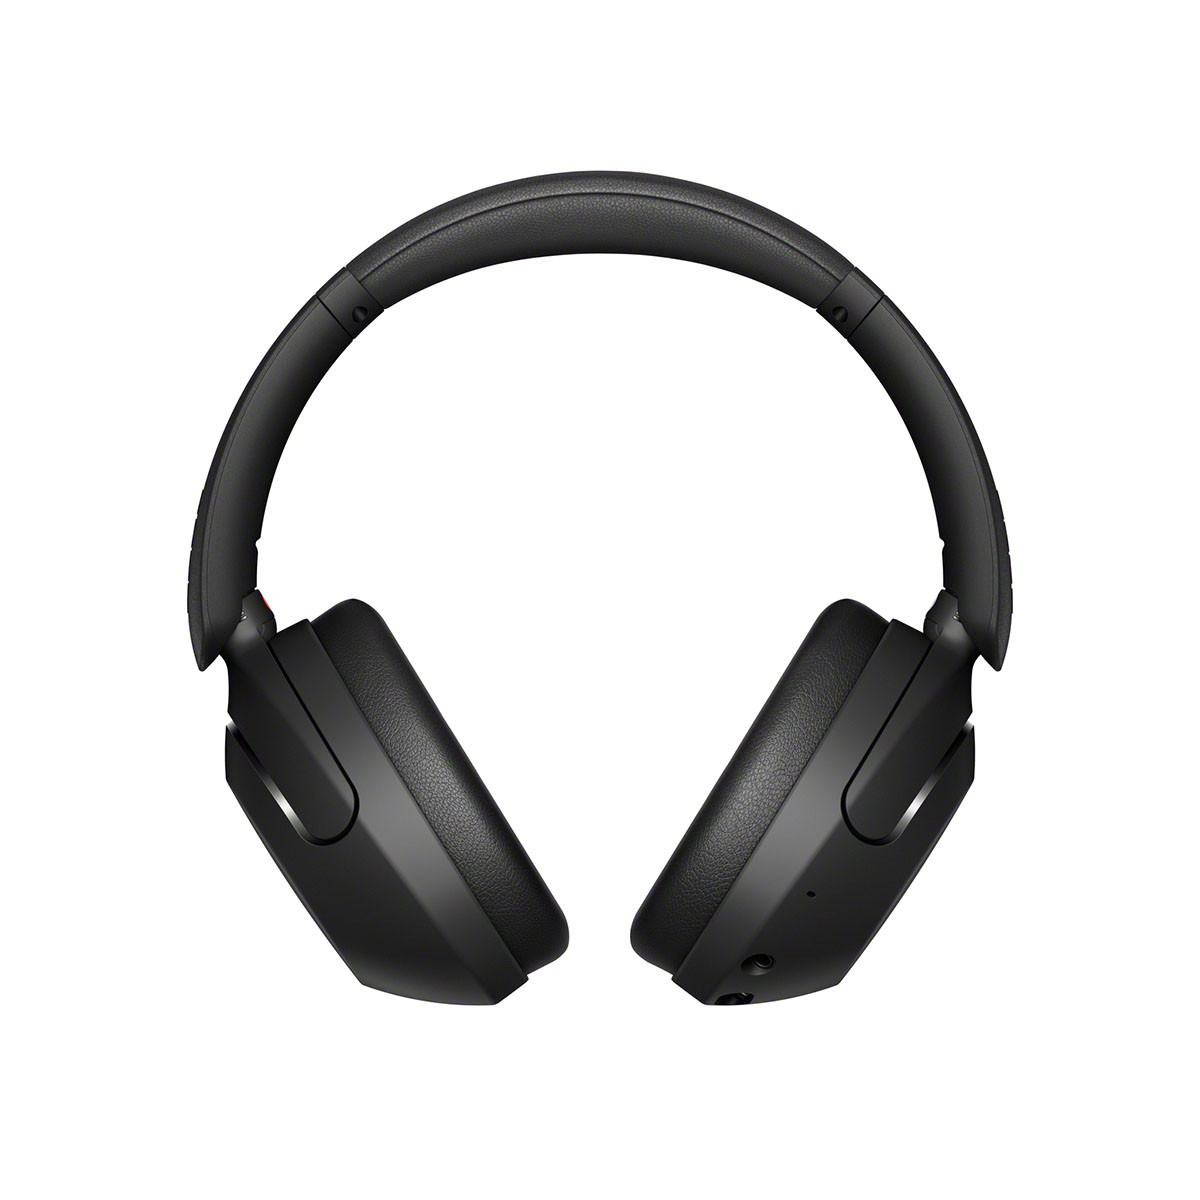 Le très recherché casque Bluetooth Sony WH-1000XM4 est en promotion